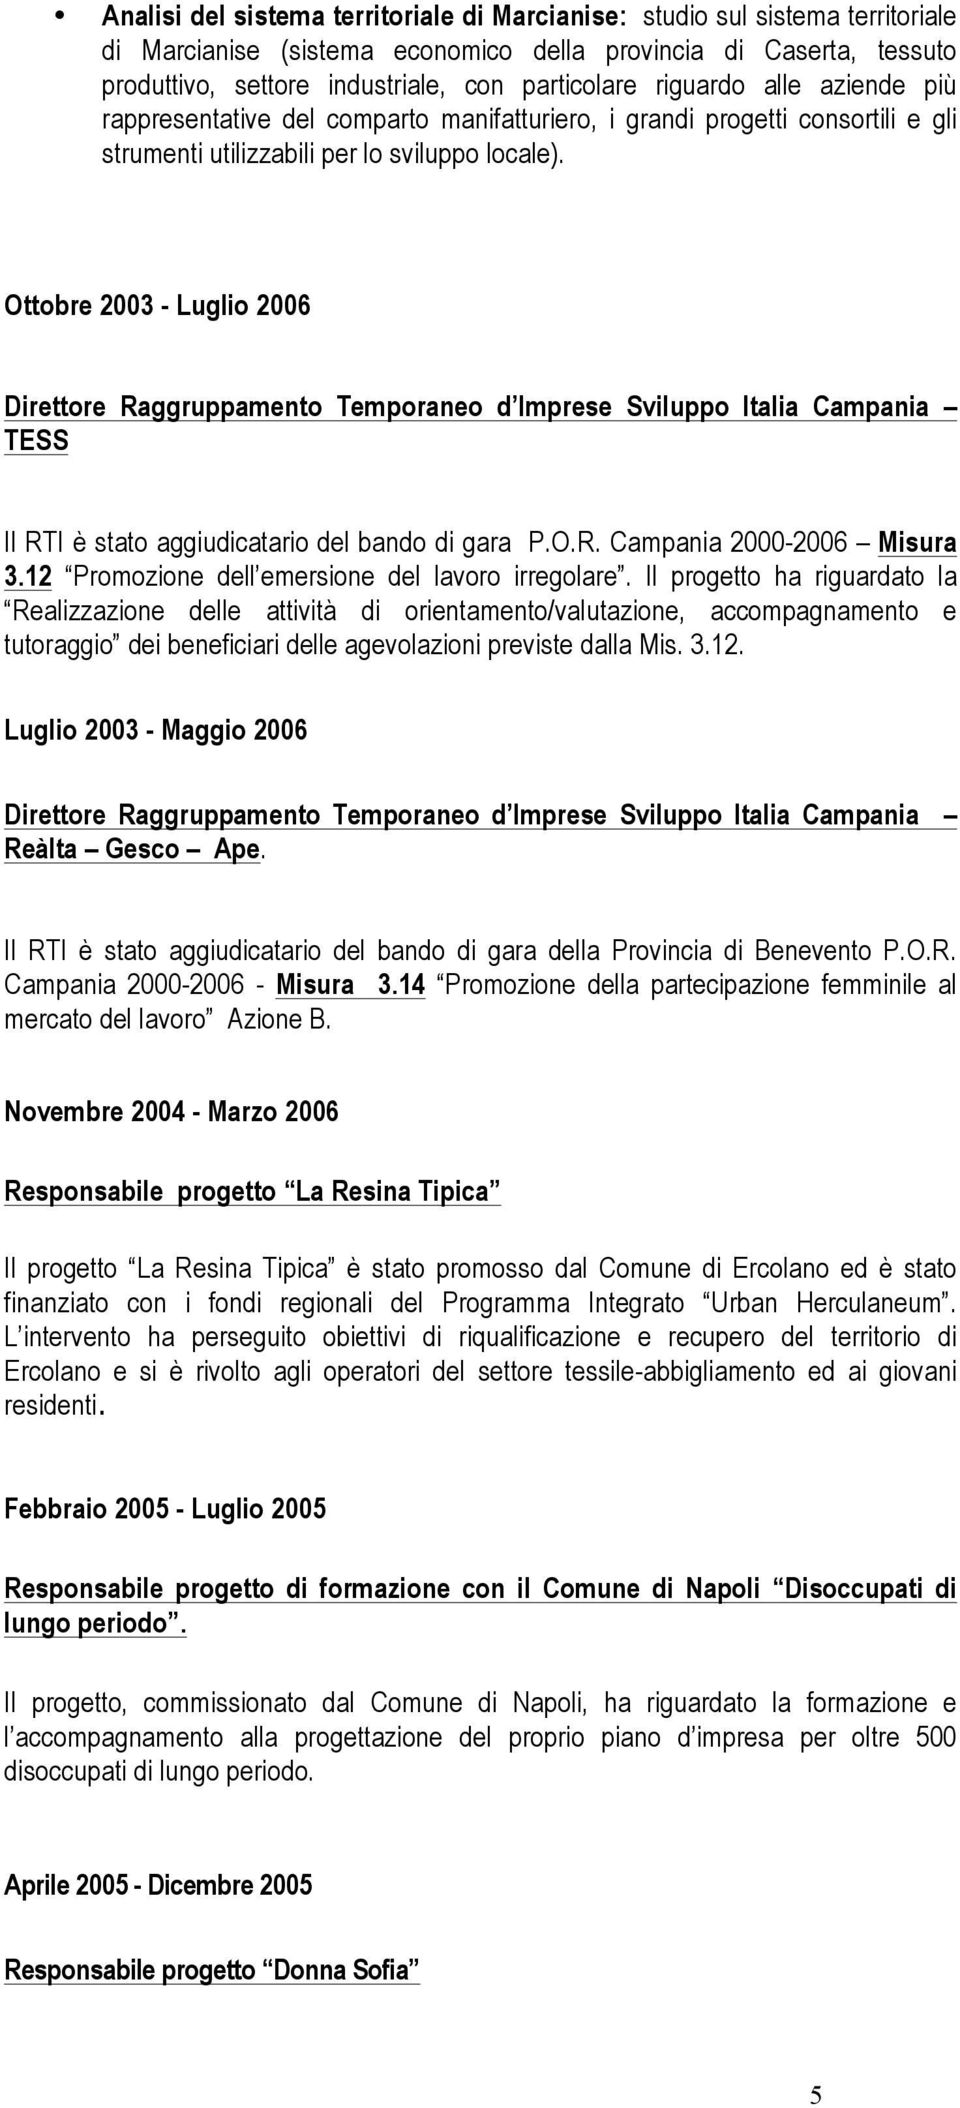 Ottobre 2003 - Luglio 2006 Direttore Raggruppamento Temporaneo d Imprese Sviluppo Italia Campania TESS Il RTI è stato aggiudicatario del bando di gara P.O.R. Campania 2000-2006 Misura 3.